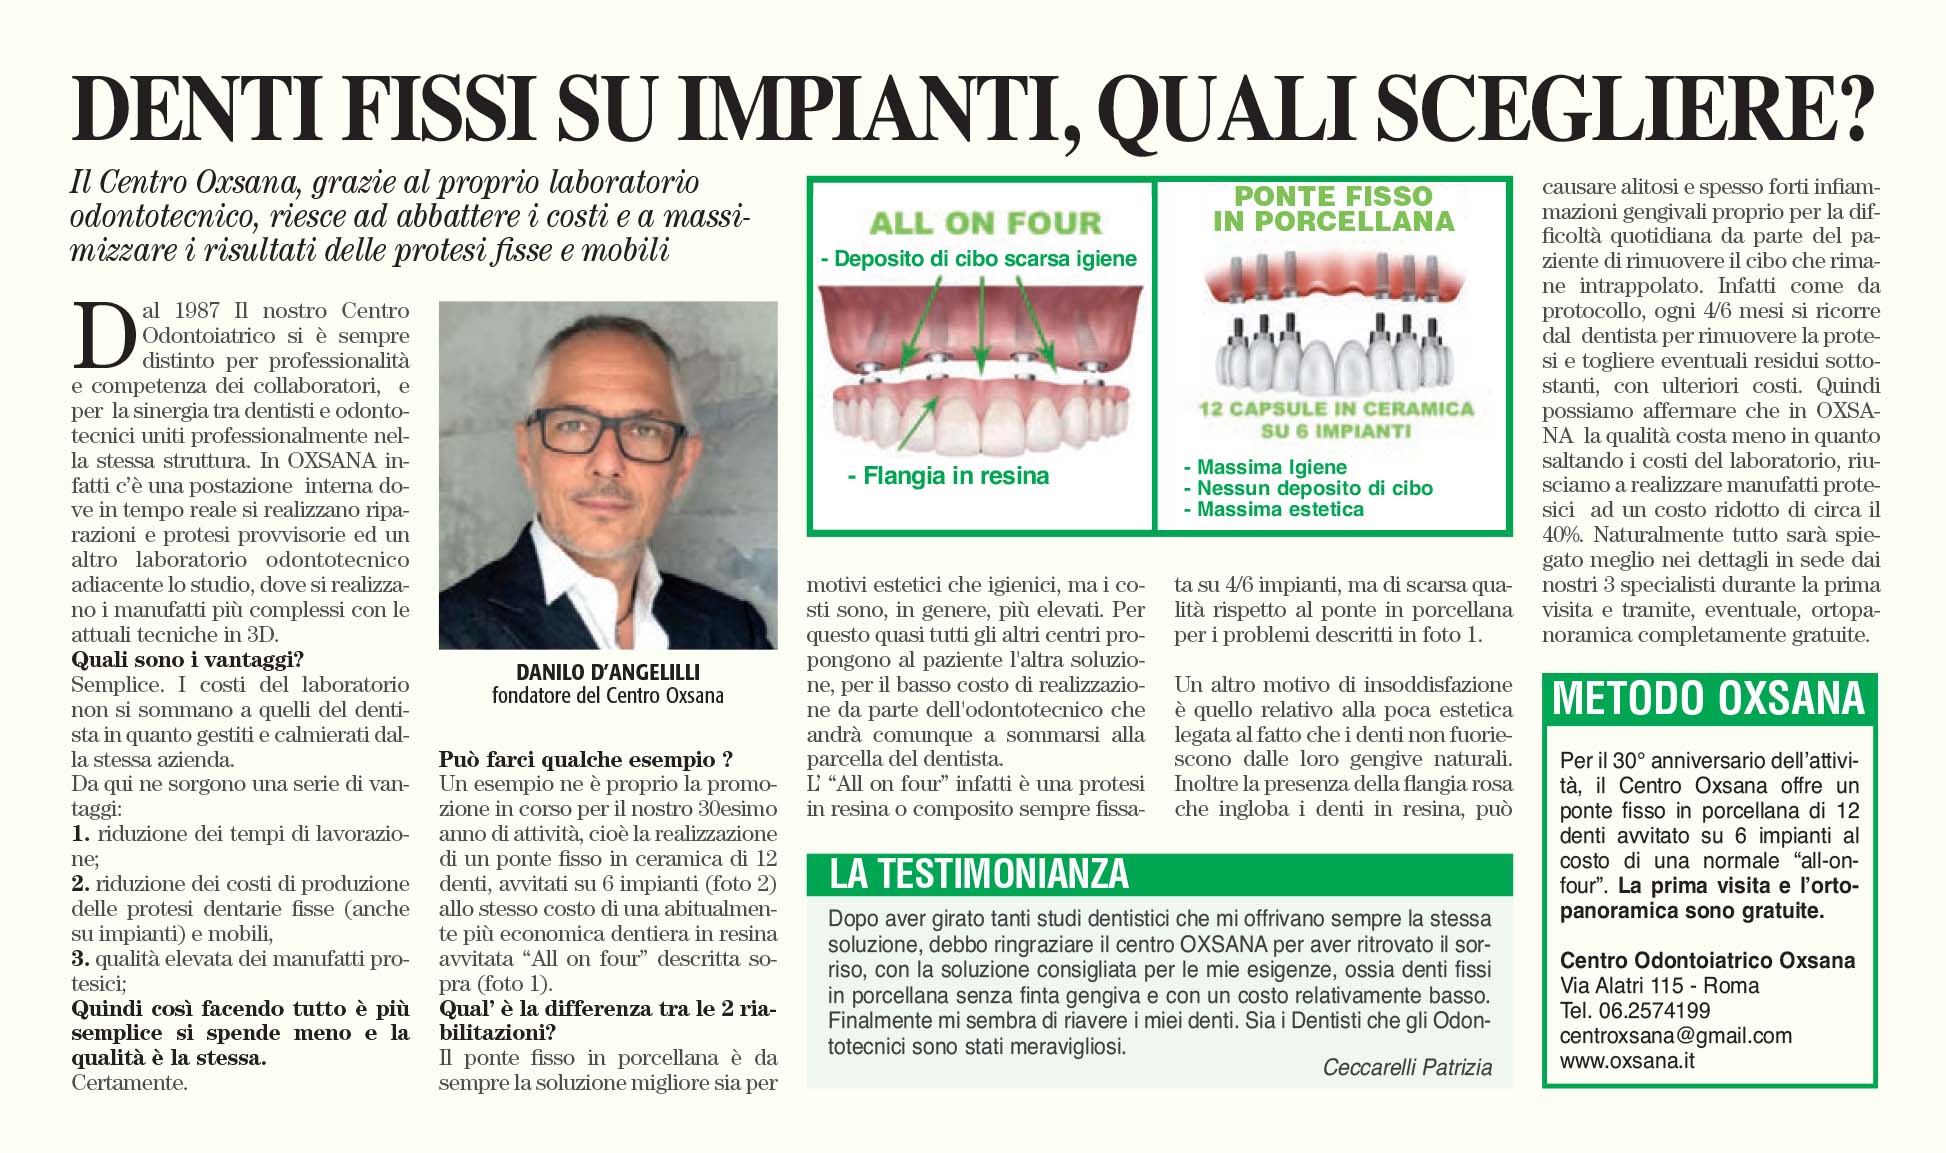 Articolo giornale - Centro Odontoiatrico Oxsana - Denti fissi quali scegliere - Dentista Roma - Prenestina